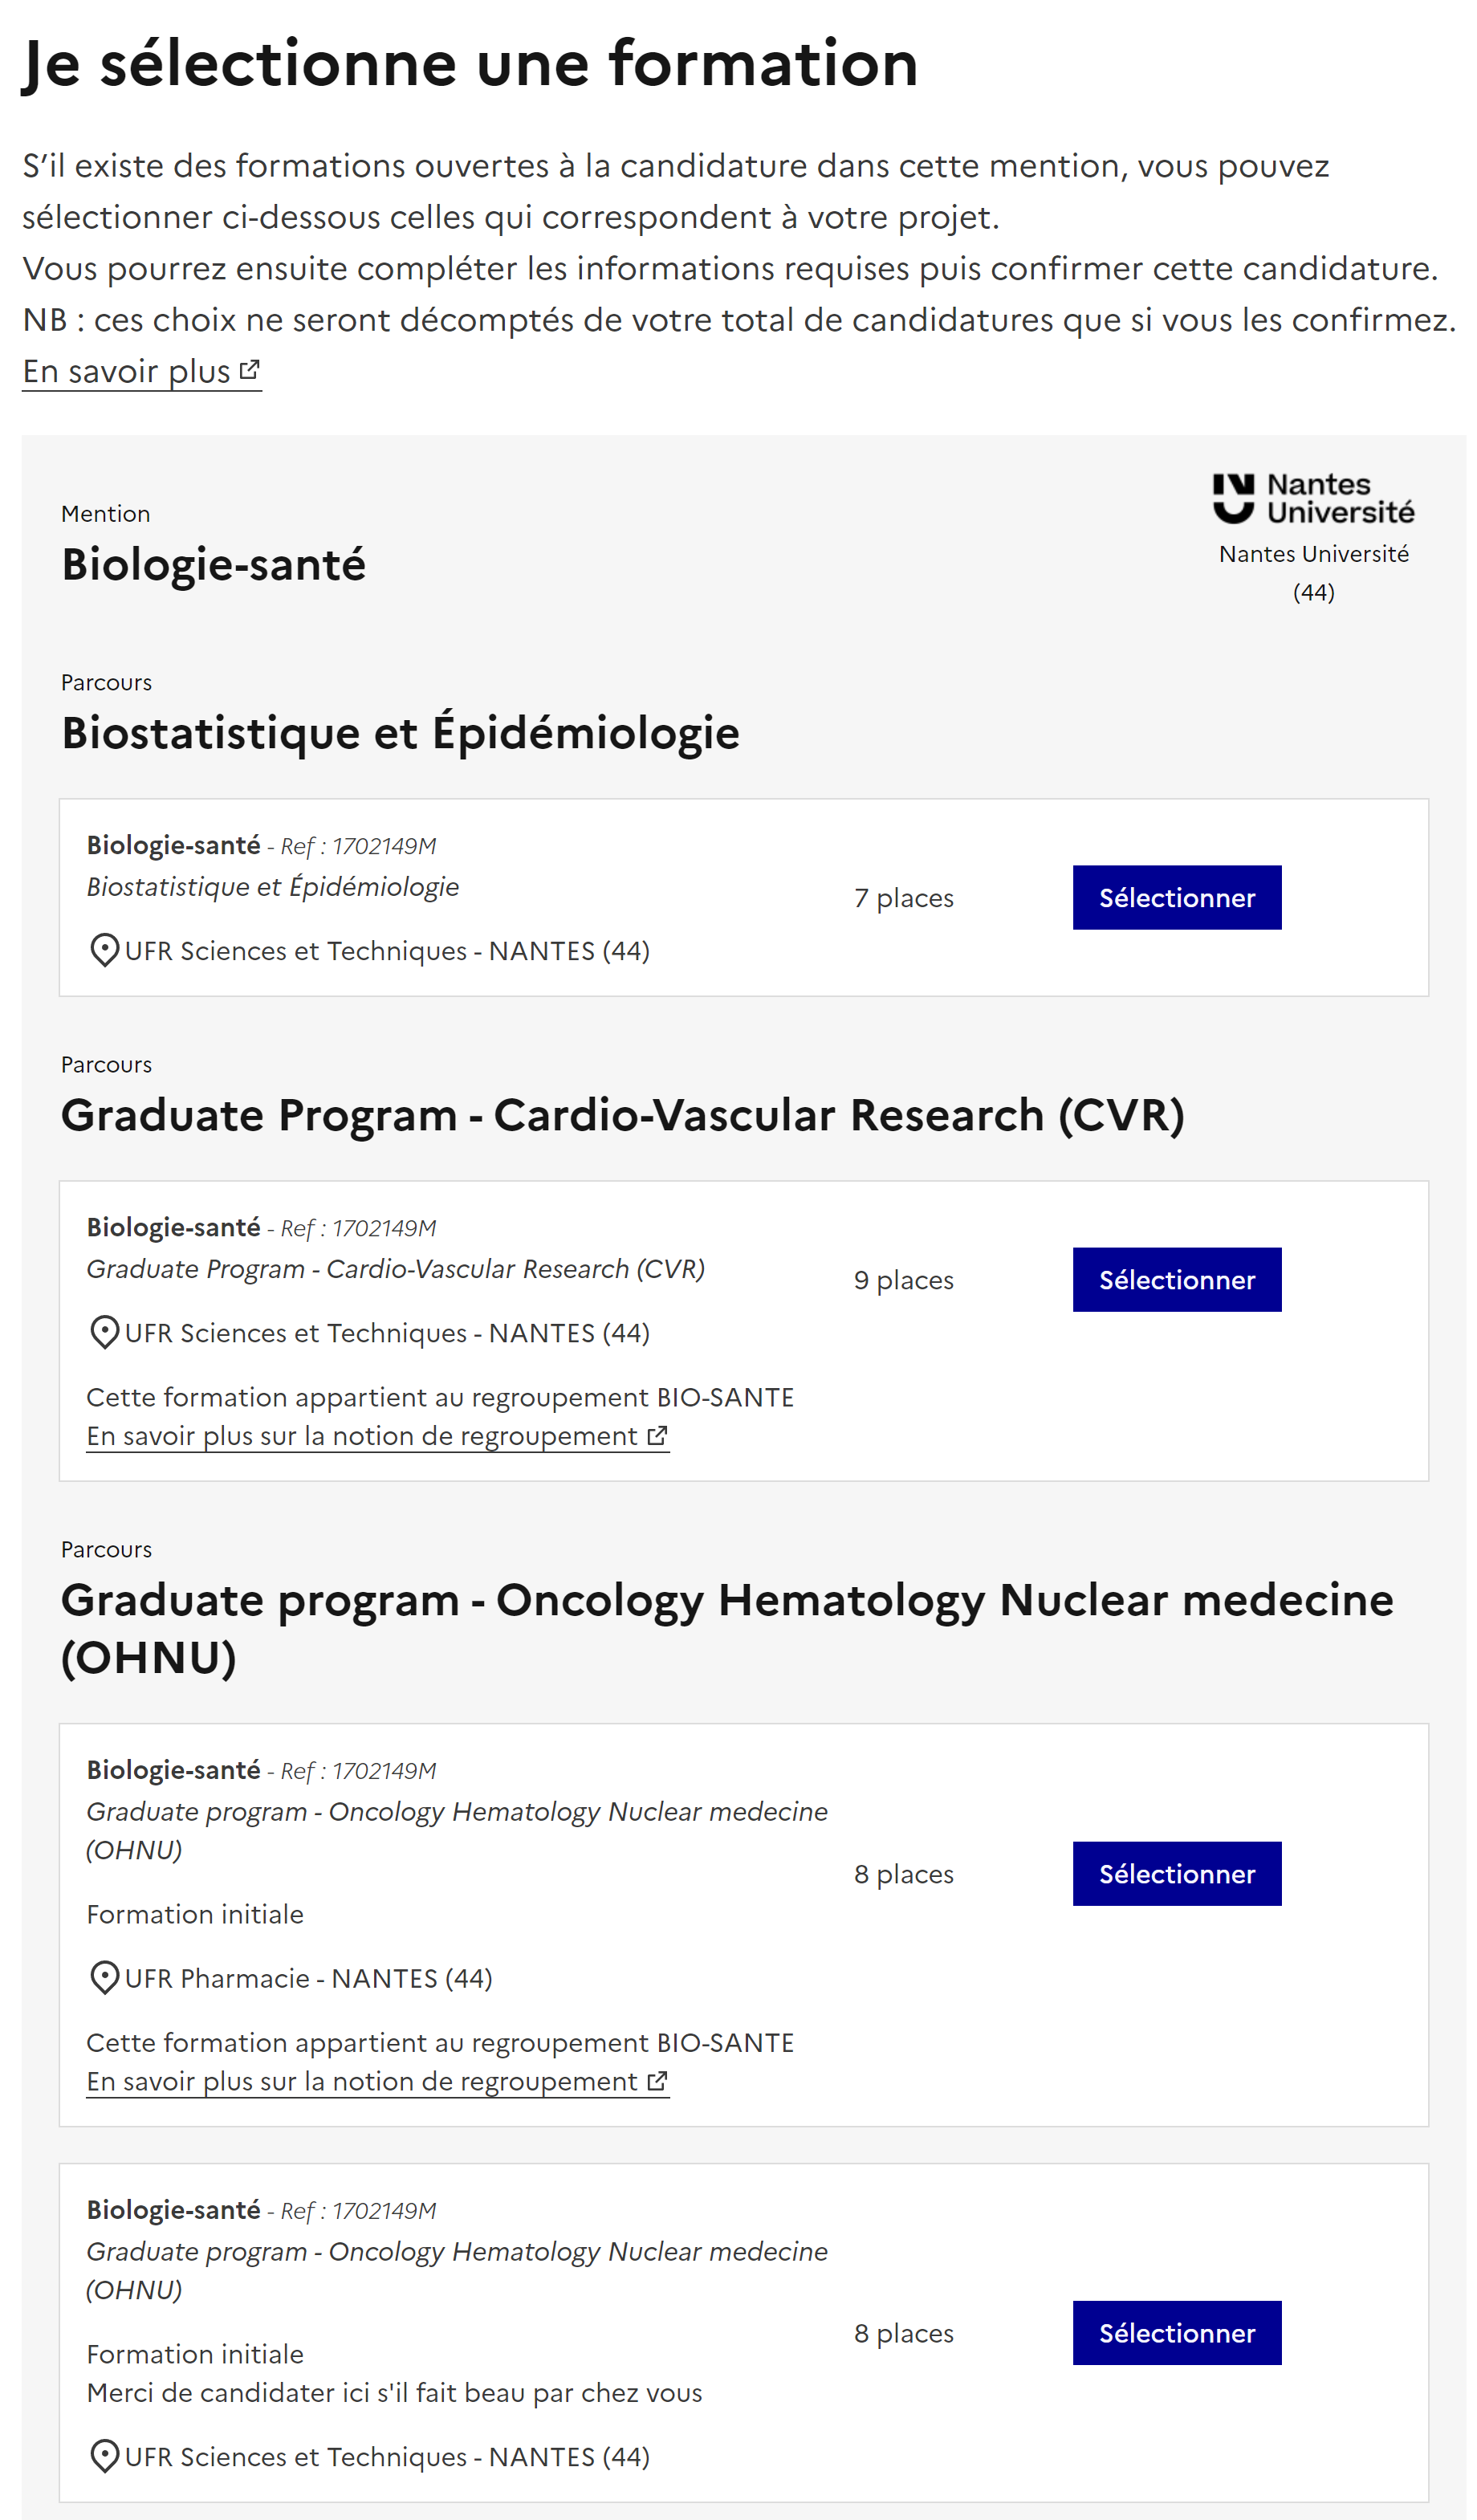 Liste des formations candidatables de la mention "Biologie-santé" de Nantes Université, avec le bouton "Sélectionner".